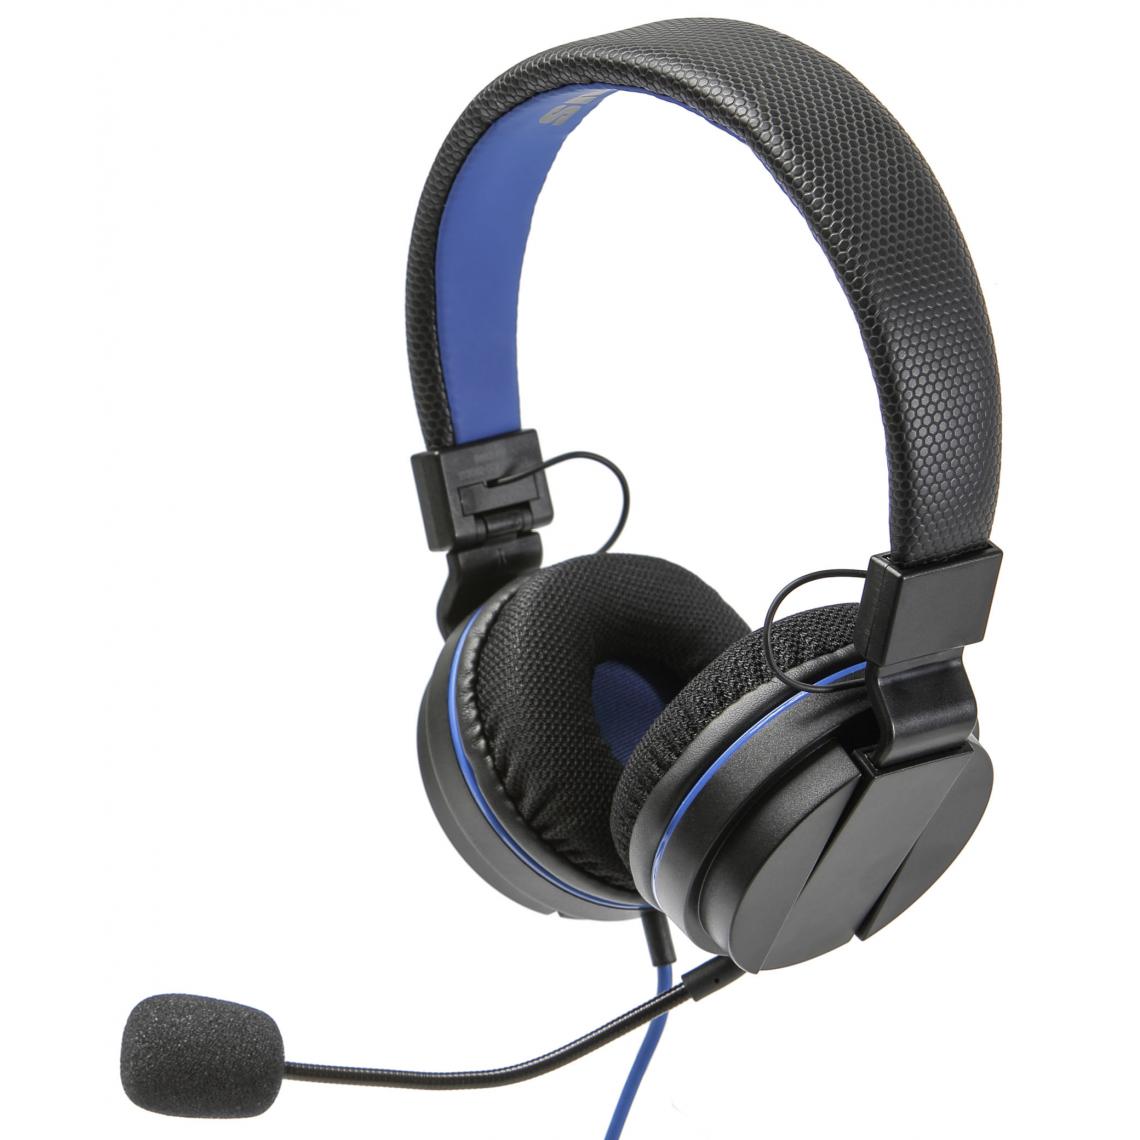 Snakebyte - Casque audio HeadSet 4 snakebyte pour PS4 noir bleu - Micro-Casque